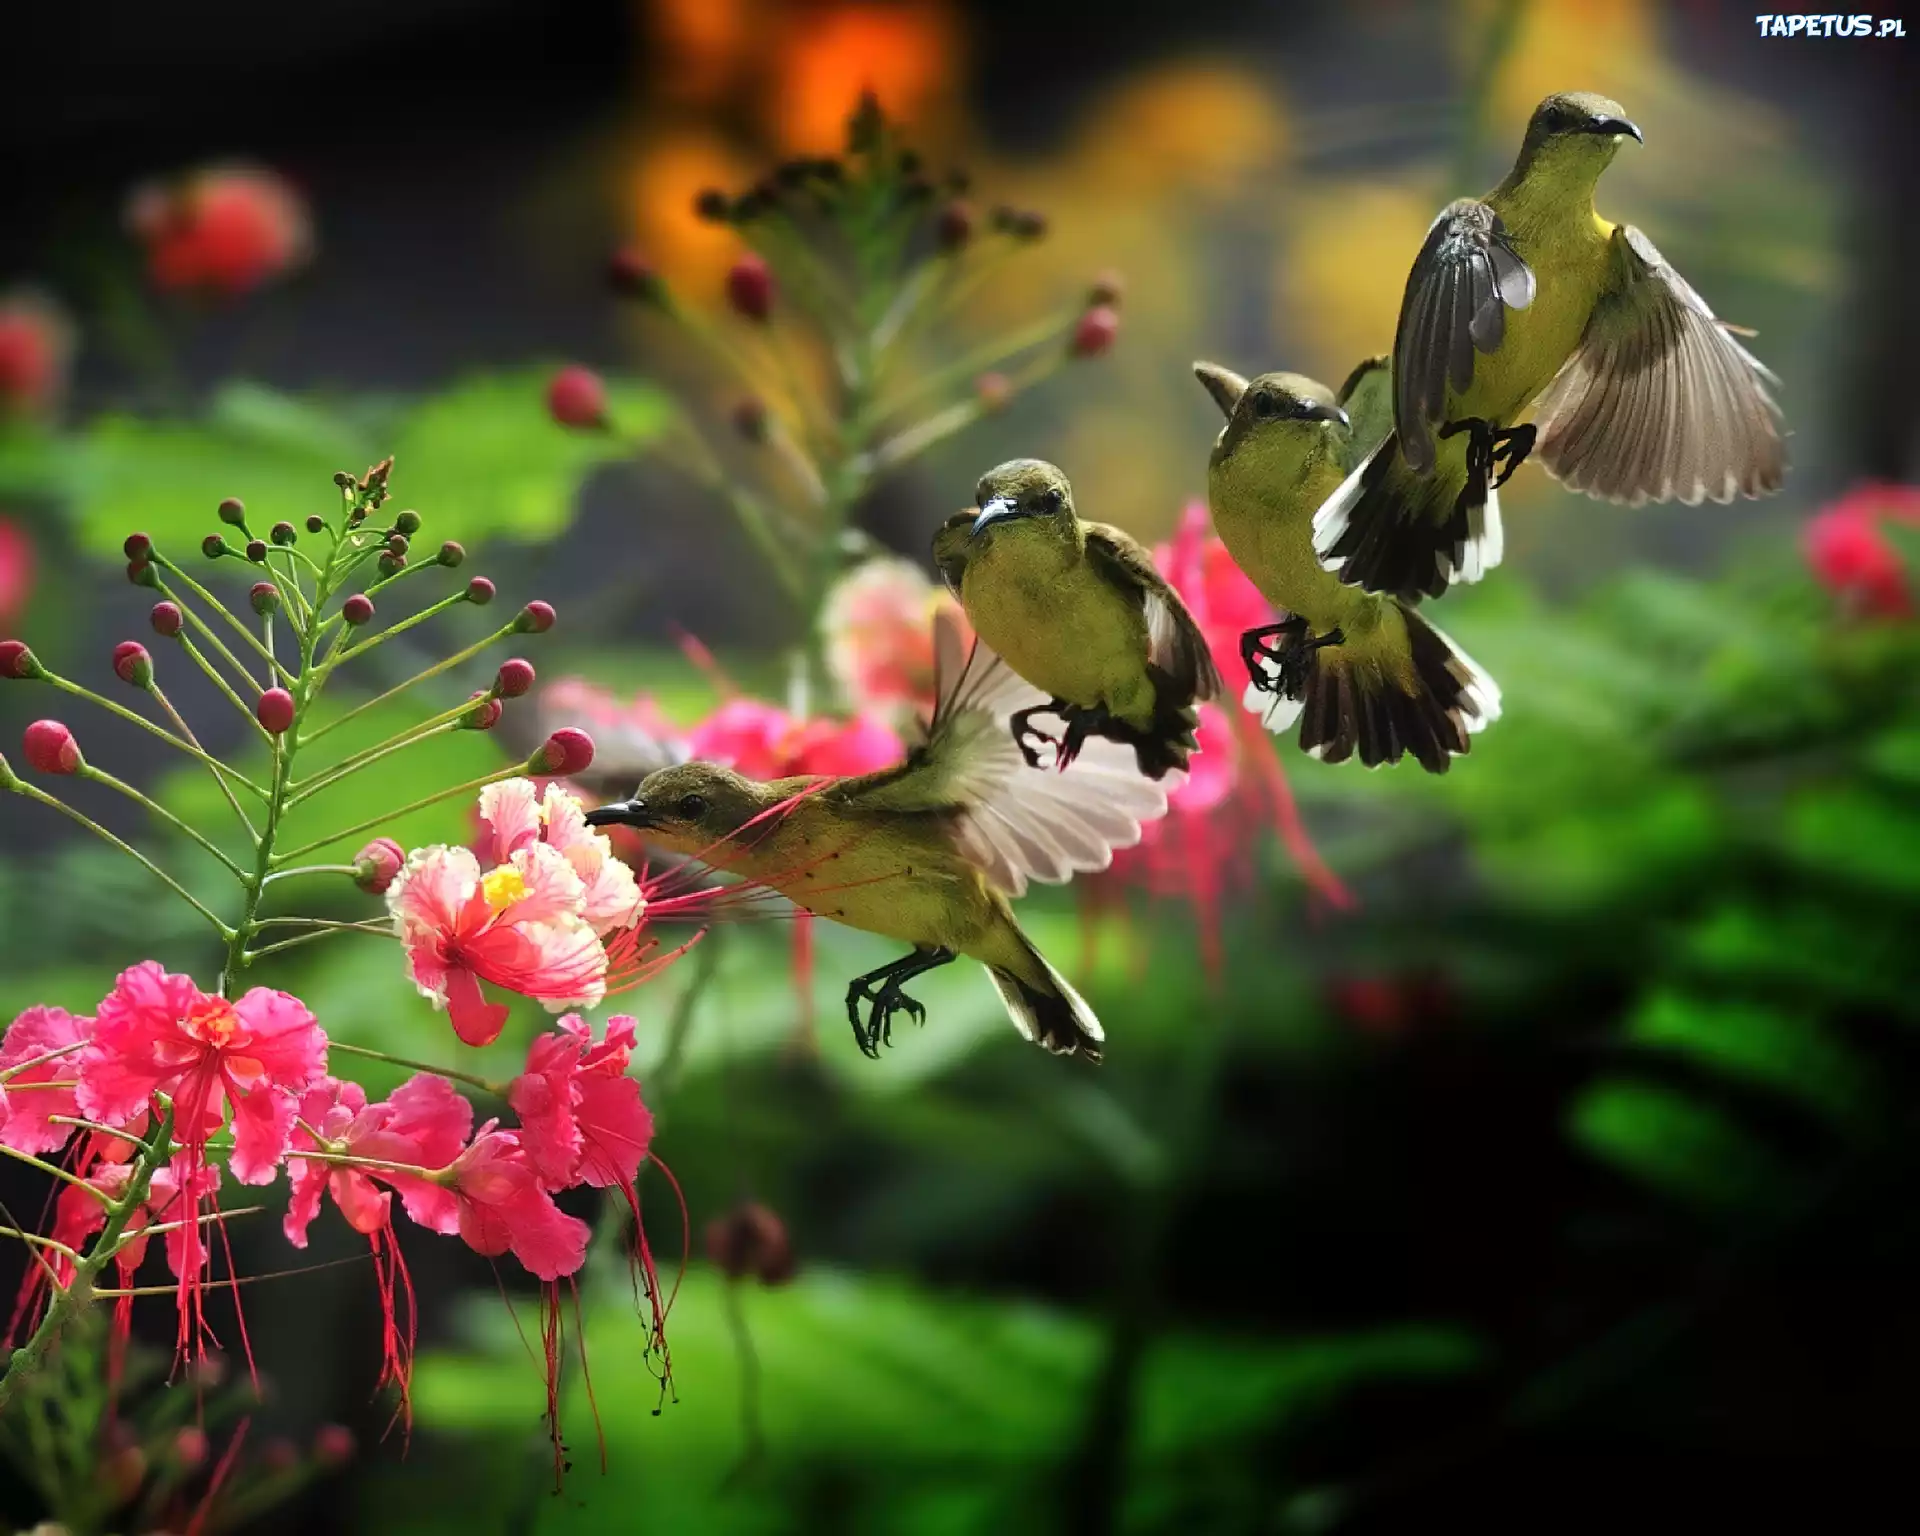 Музыка лети птичка. Райские птицы. Красивые птицы. Красивые цветы и птицы. Красивая природа с птичками.